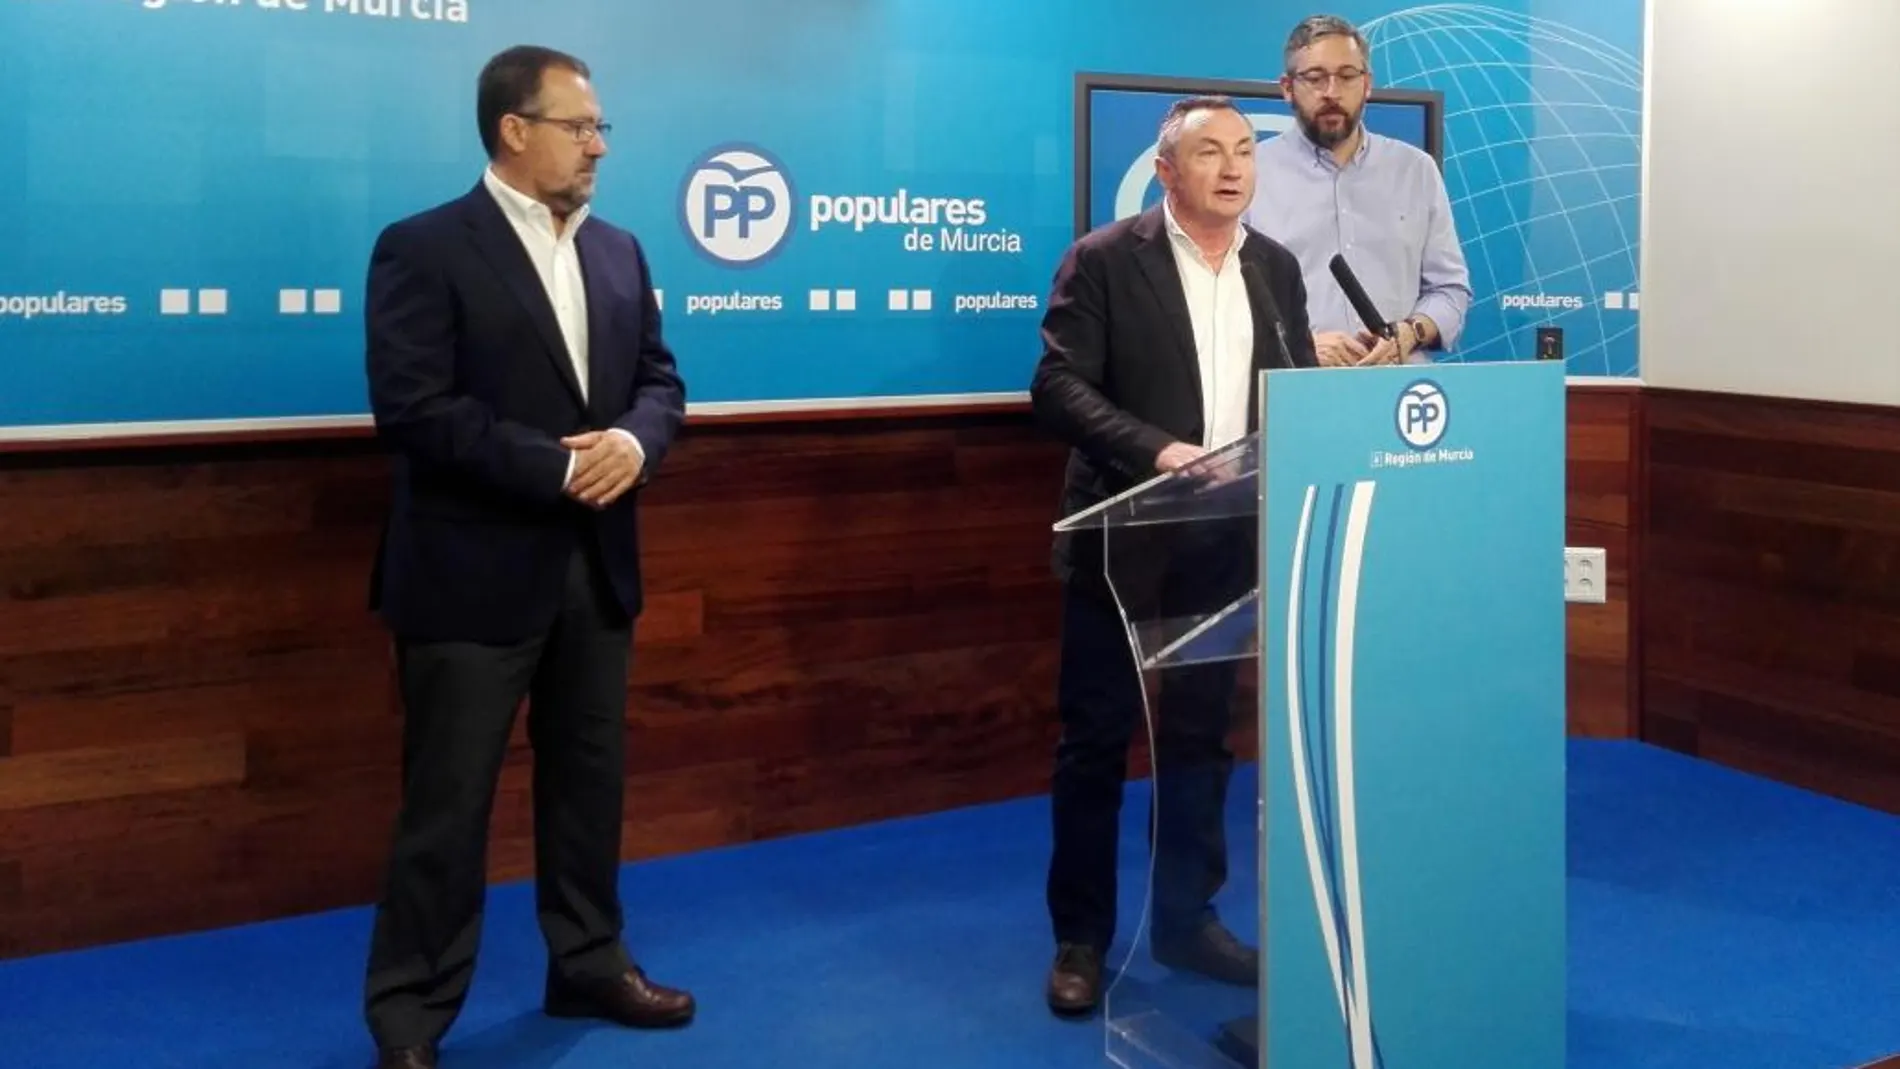 El portavoz del PP en Moratalla, Pascual Soria, junto al edil Pablo Fernández y el portavoz del PP regional, Víctor Martínez